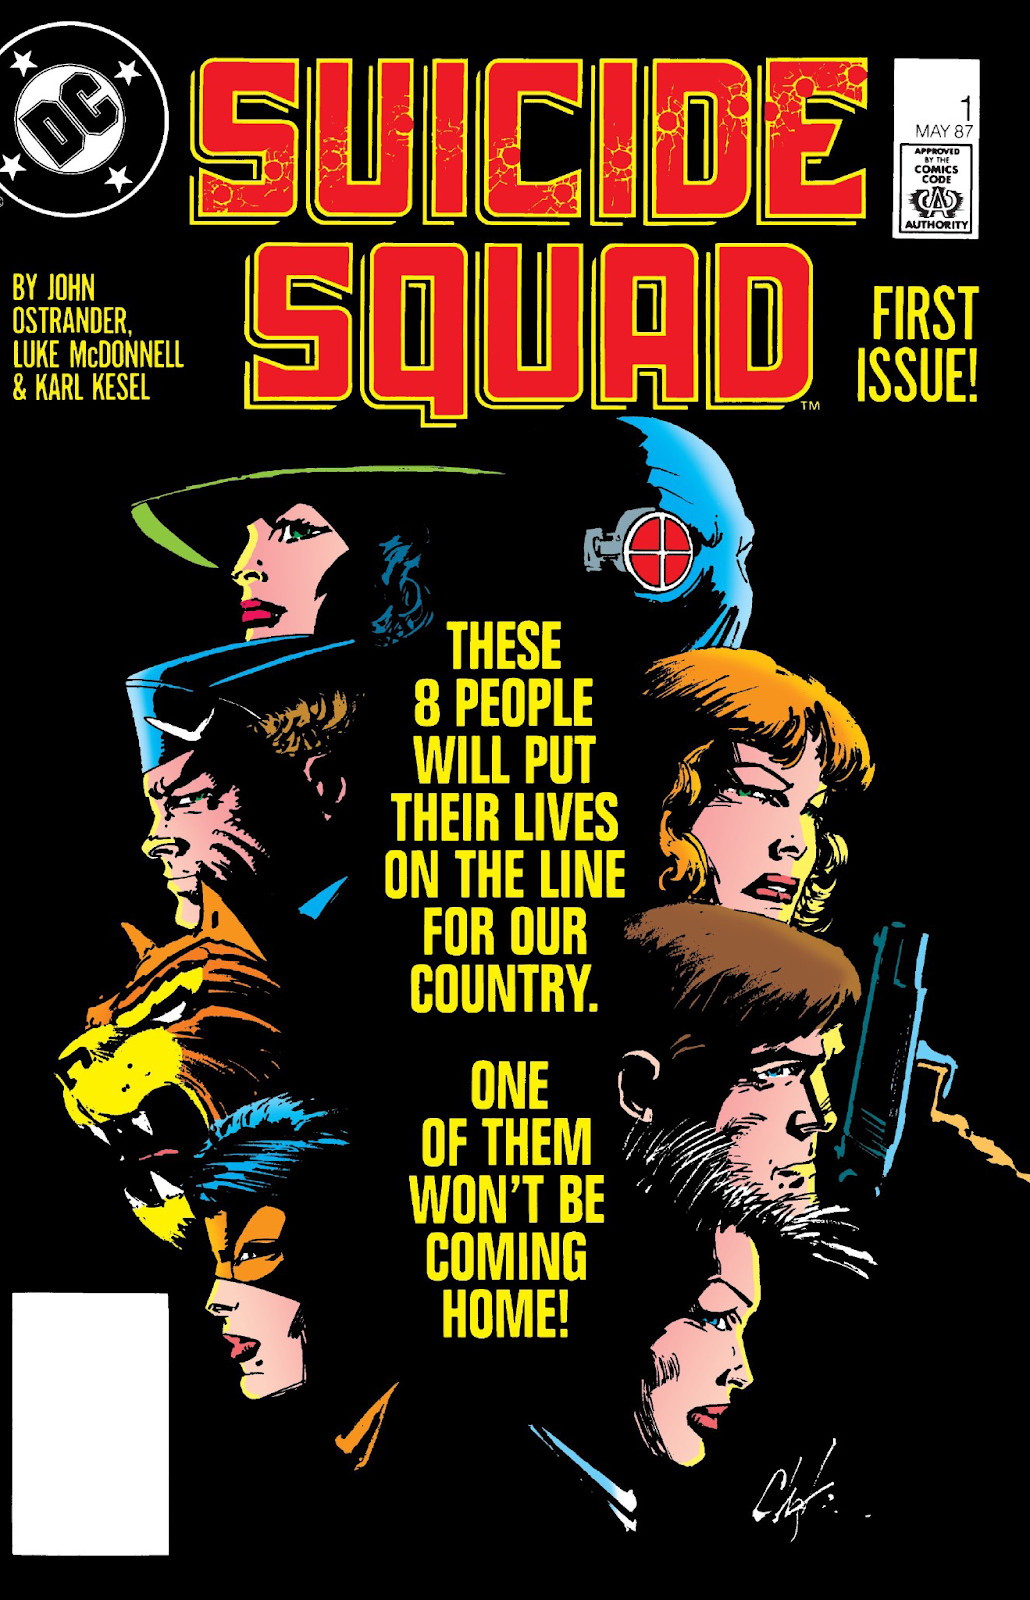 Image : Les huit membres de la Suicide Squad de profil dans l'obscurité sur la couverture de Suicide Squad #1 (1987).  Le texte en bloc au centre de l’image indique : « Ces 8 personnes risqueront leur vie pour notre pays.  L'un d'eux ne rentrera pas chez lui !